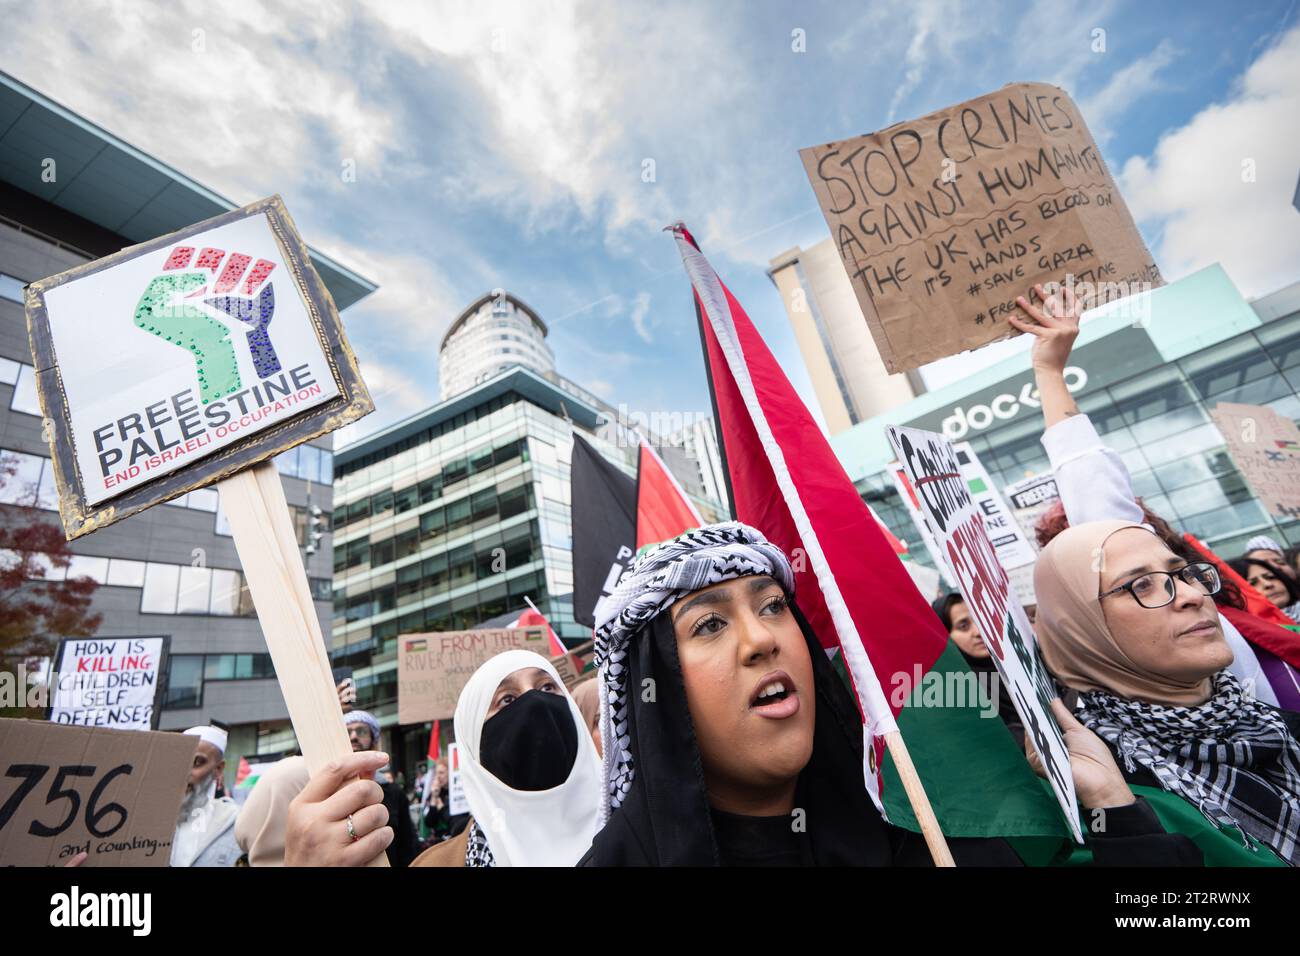 Manifestation devant le siège de la BBC à Salford Quays Manchester. Quelques milliers de personnes se sont rassemblées pour protester contre les droits des Palestiniens et la détérioration croissante de la situation à Gaza. Des manifestations ont lieu dans tout le Royaume-Uni, la Palestine Solidarity Campaign (PSC) indiquant qu'elle s'attend à ce que 200 000 manifestants se joignent à ce qu'elle prétend être la « plus grande marche pour les droits des Palestiniens dans l'histoire britannique » samedi. Photo : garyroberts/worldwidefeatures.com Banque D'Images